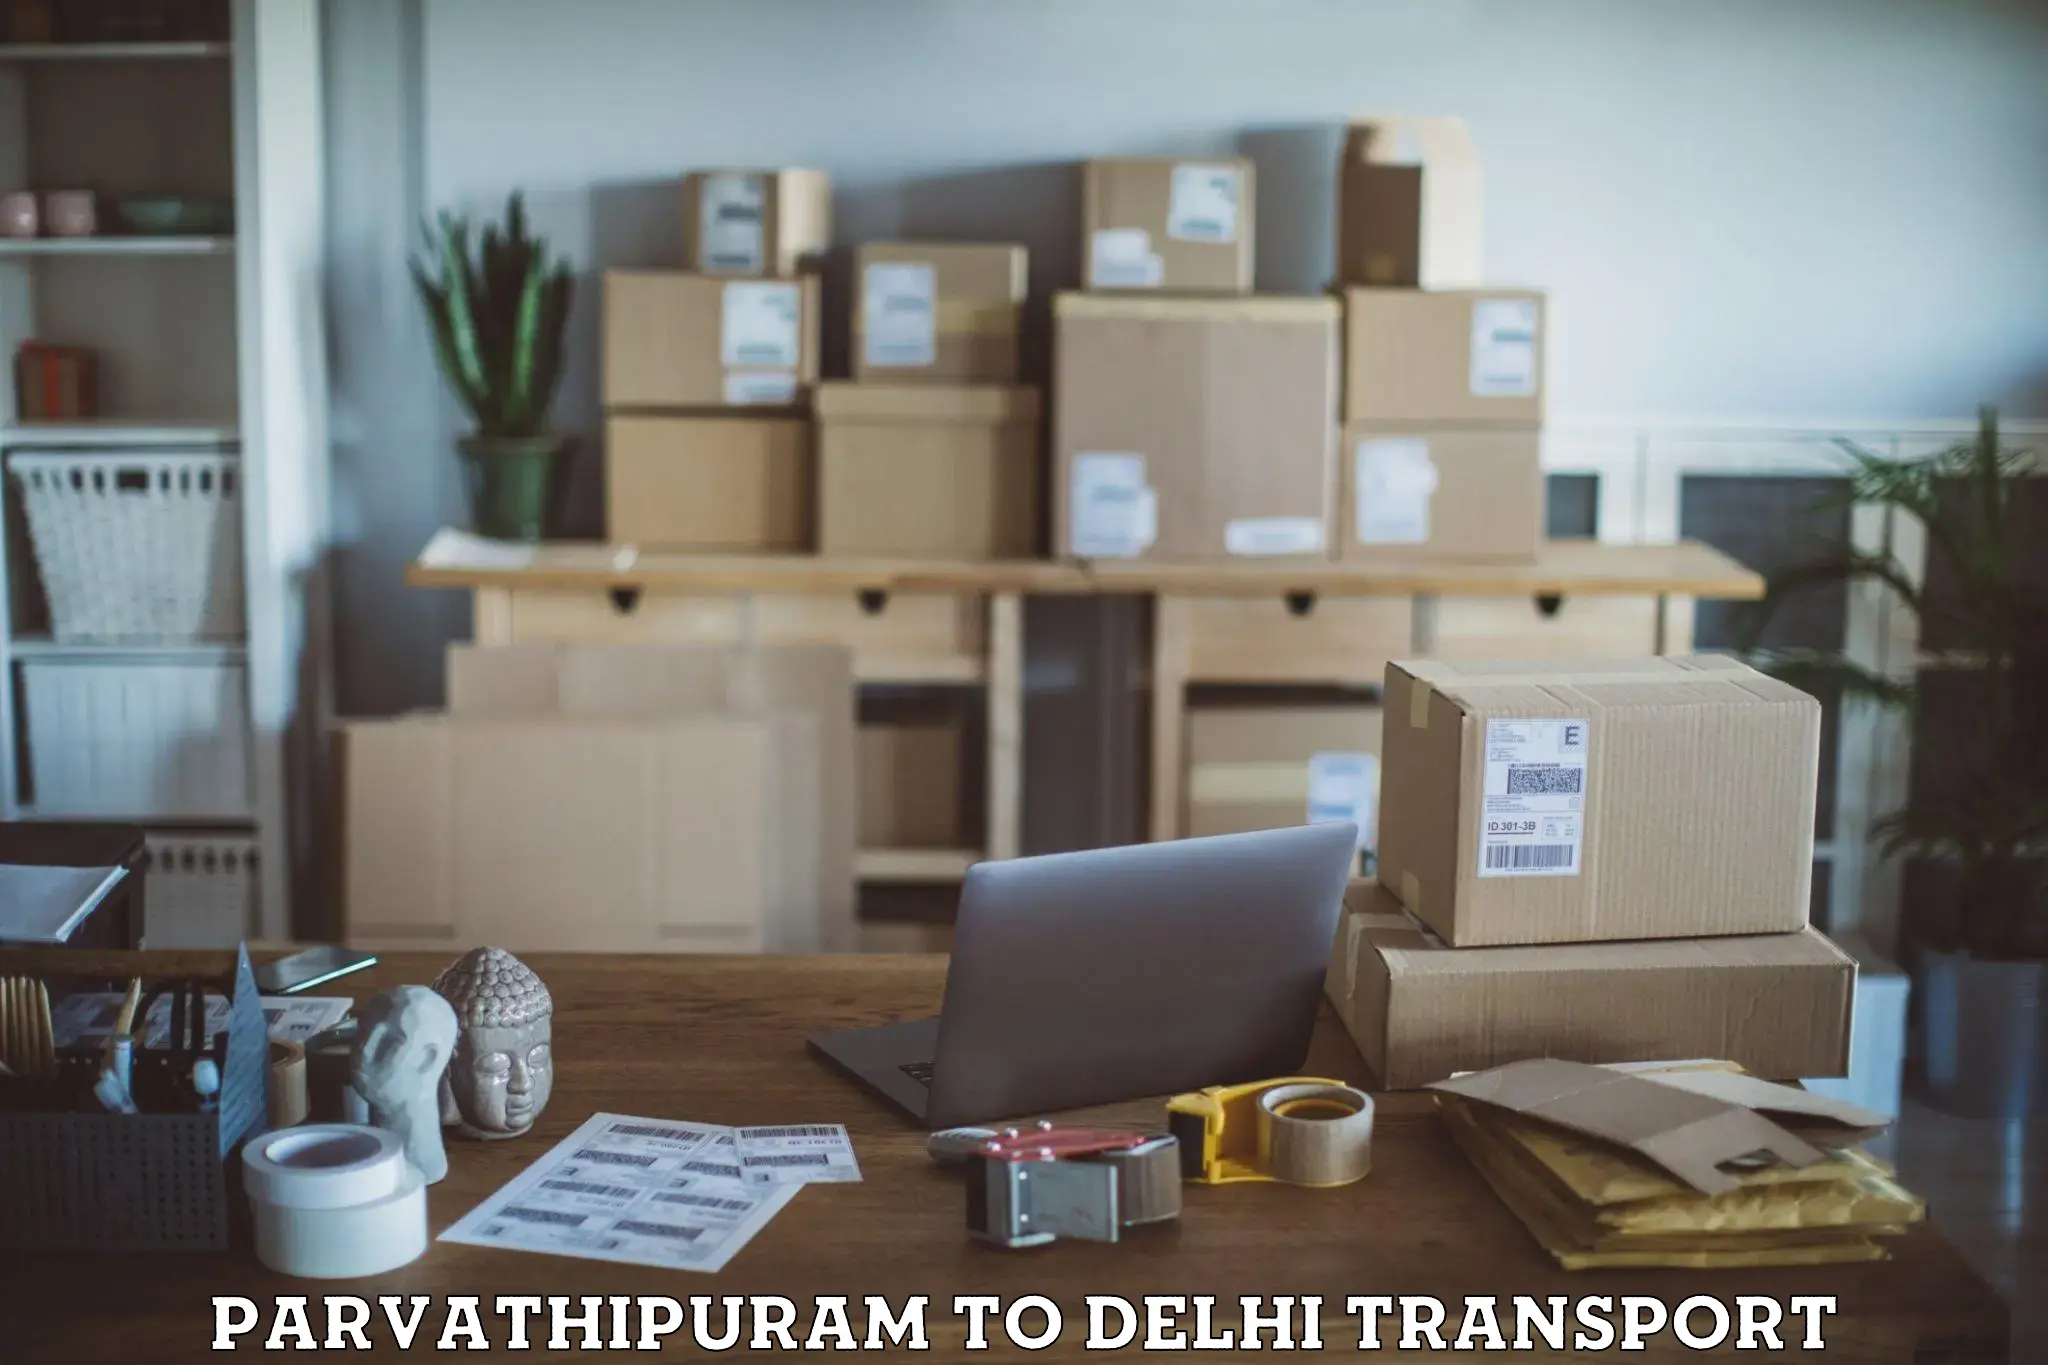 Pick up transport service Parvathipuram to East Delhi